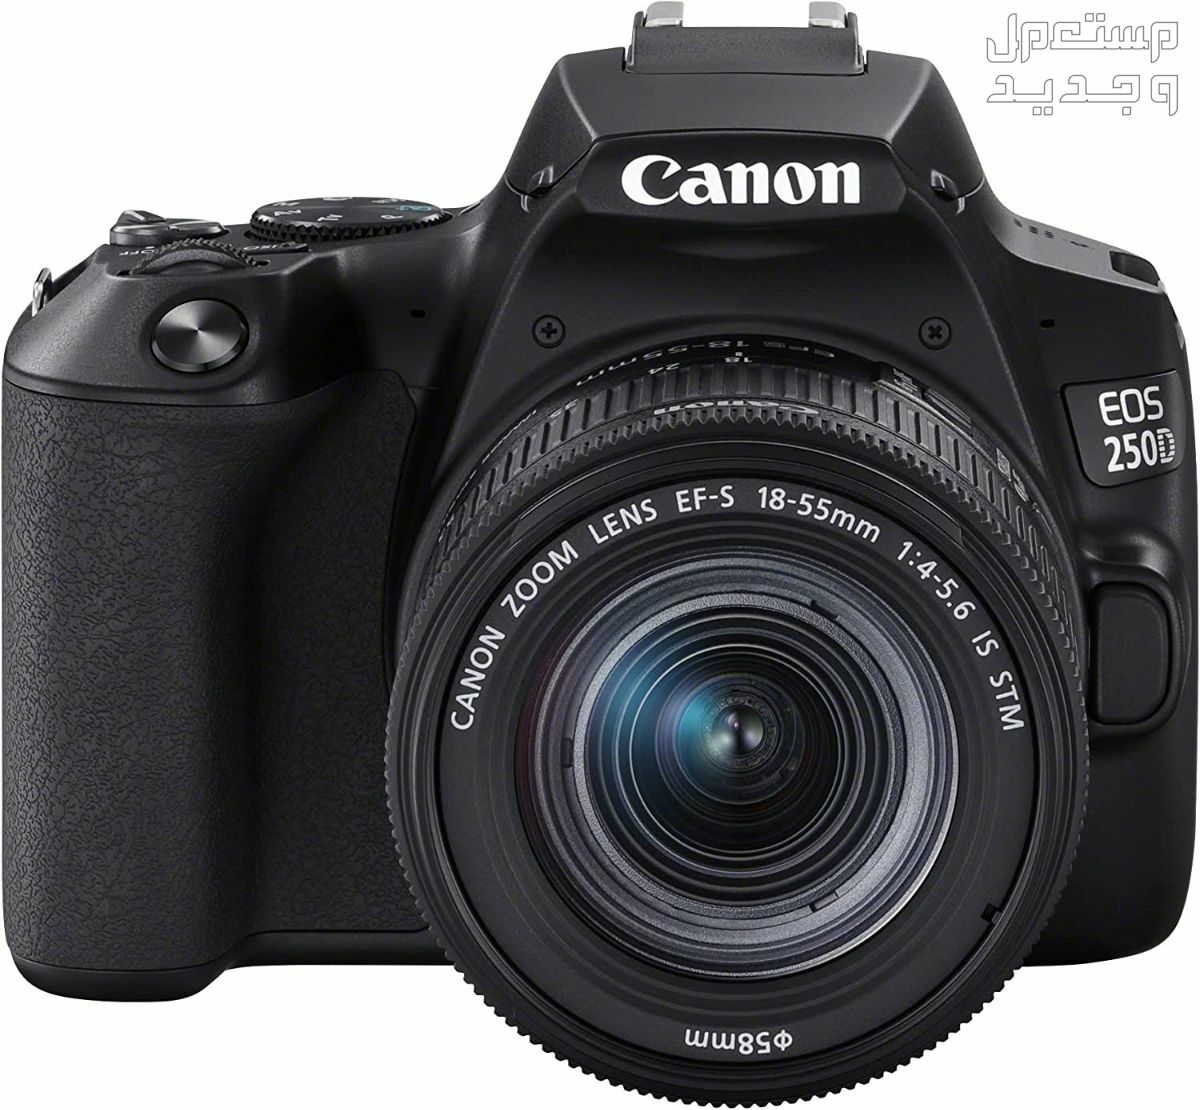 سعر ومميزات ومواصفات أرخص 5 كاميرات تصوير من كانون في لبنان مميزات كاميرا Canon EOS 250D